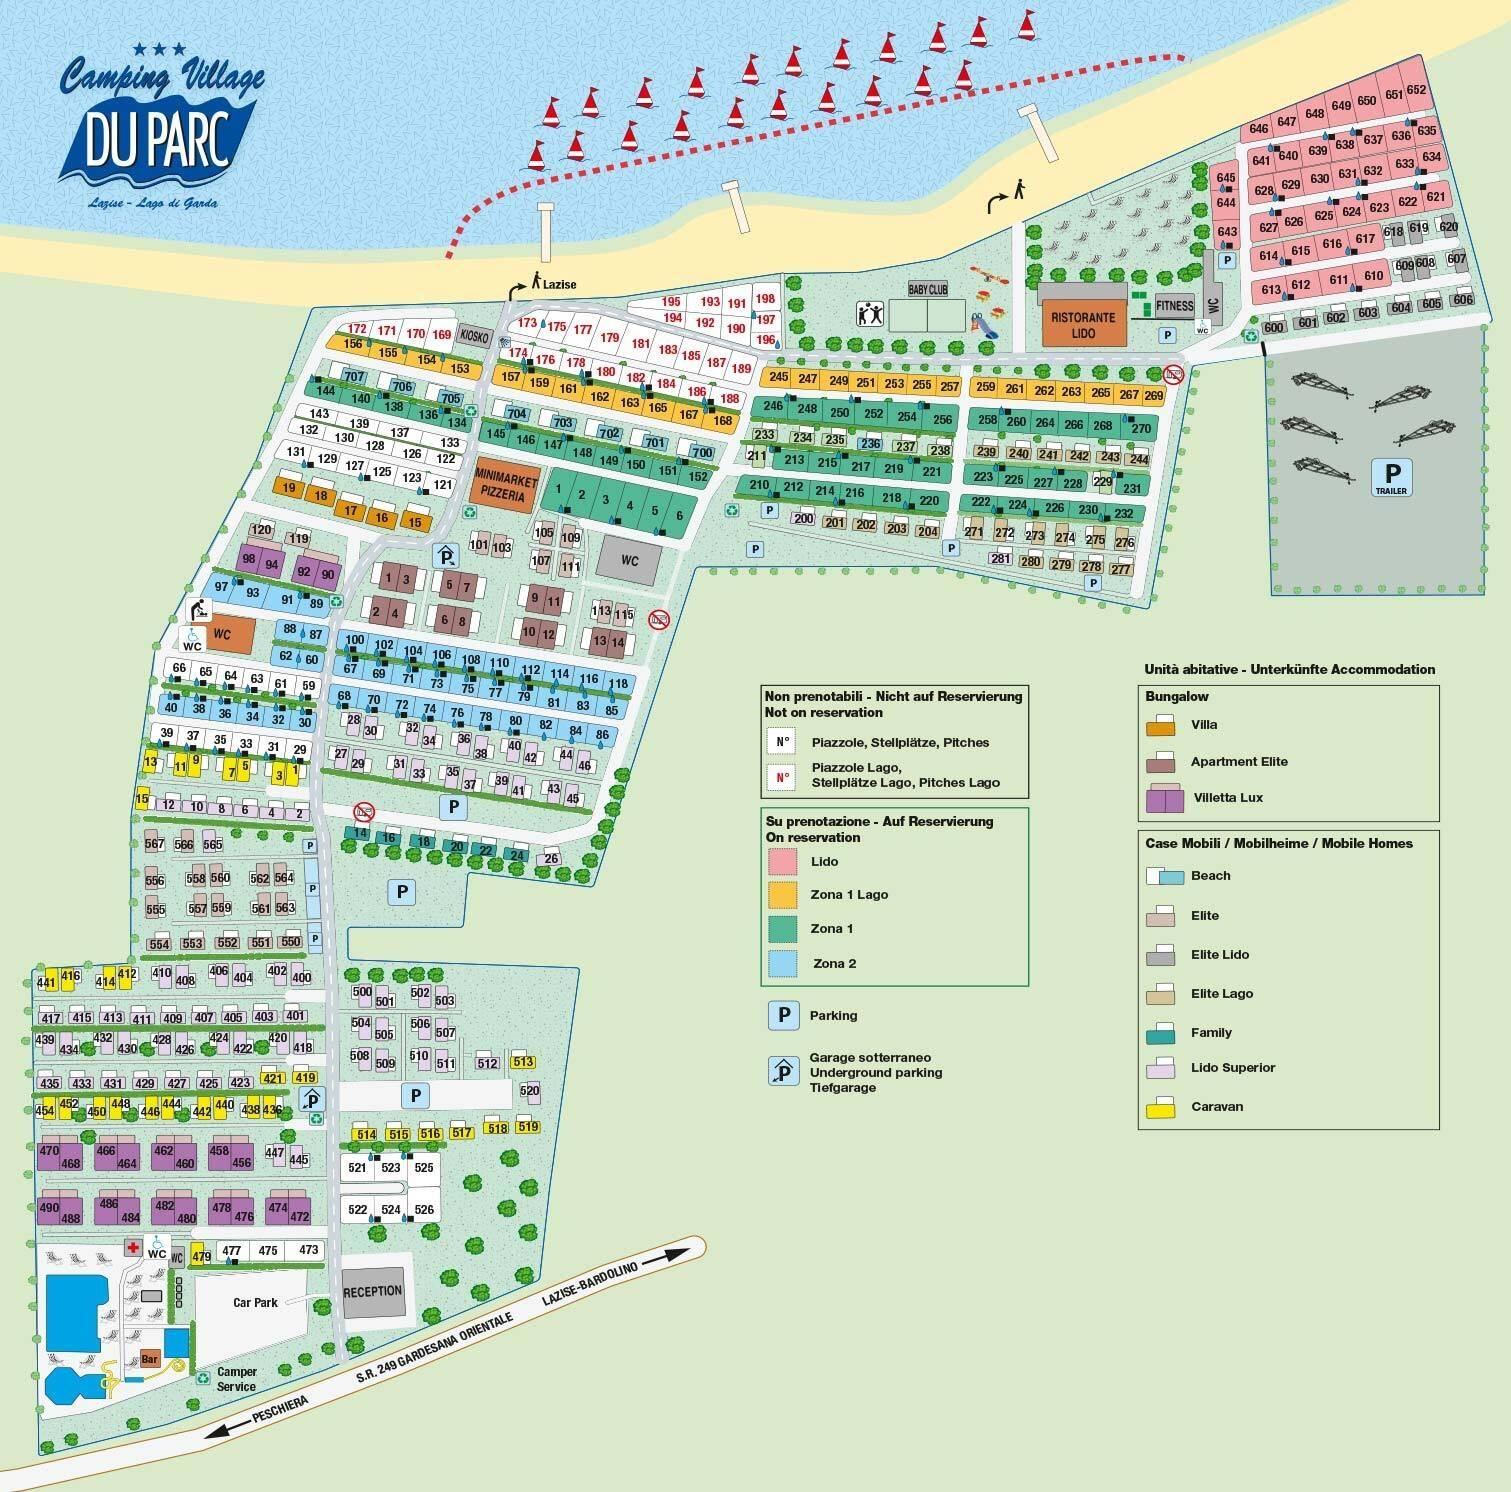 Camping Village Du Parc – map